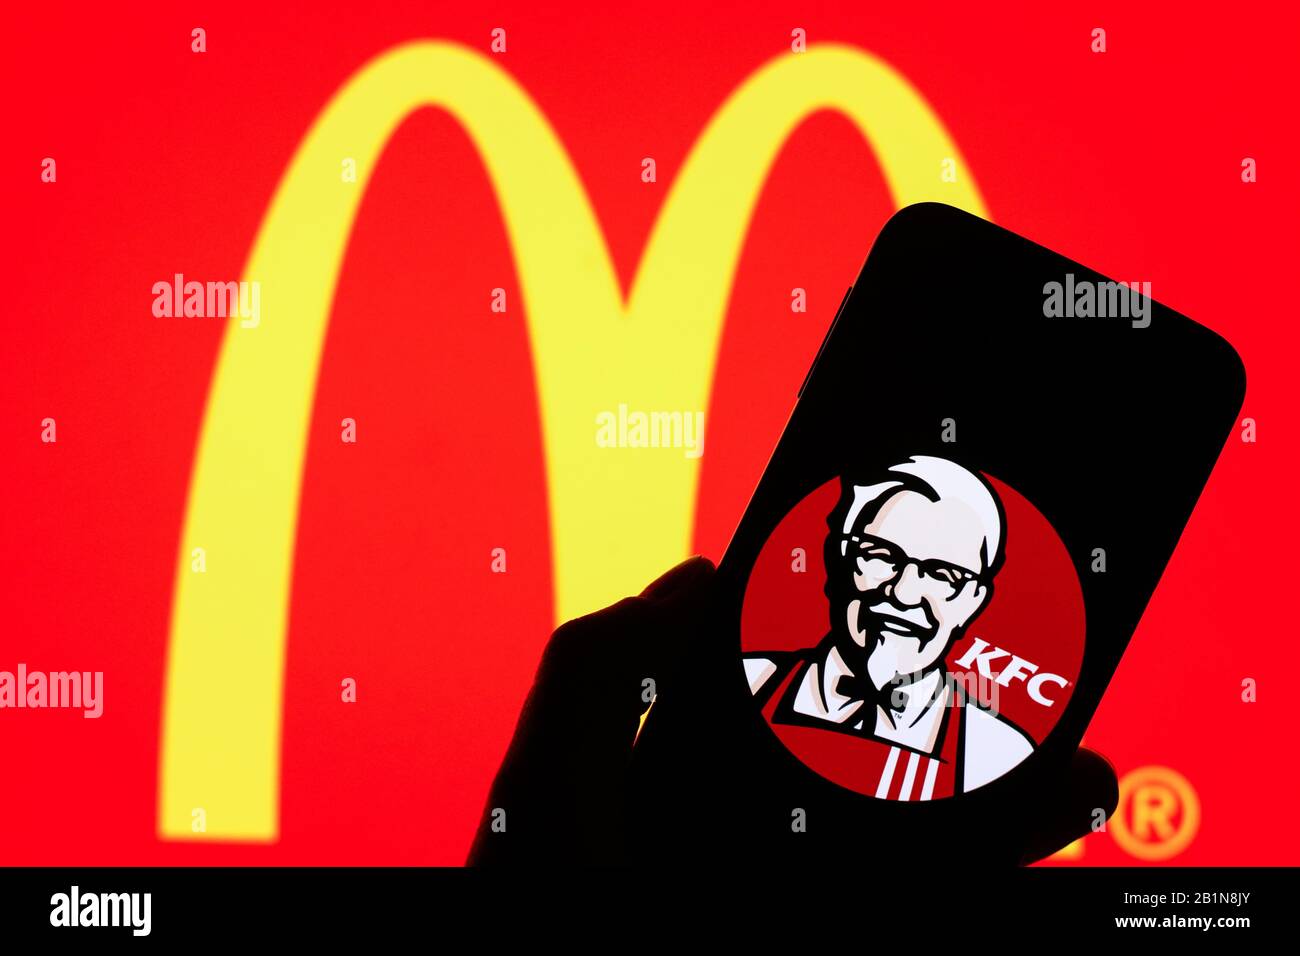 Bạn đã bao giờ nhìn thấy logo KFC trên màn hình điện thoại thông minh chưa? Điều đó có thể khiến bạn khó mà không bật cười vì nhầm lẫn giữa logo KFC và logo MacDonald. Hãy xem hình ảnh này và dự đoán xem bạn sẽ nhận ra logo nào trước tiên! Nào, hãy bấm vào hình ảnh ngay bây giờ để biết đáp án nhé!